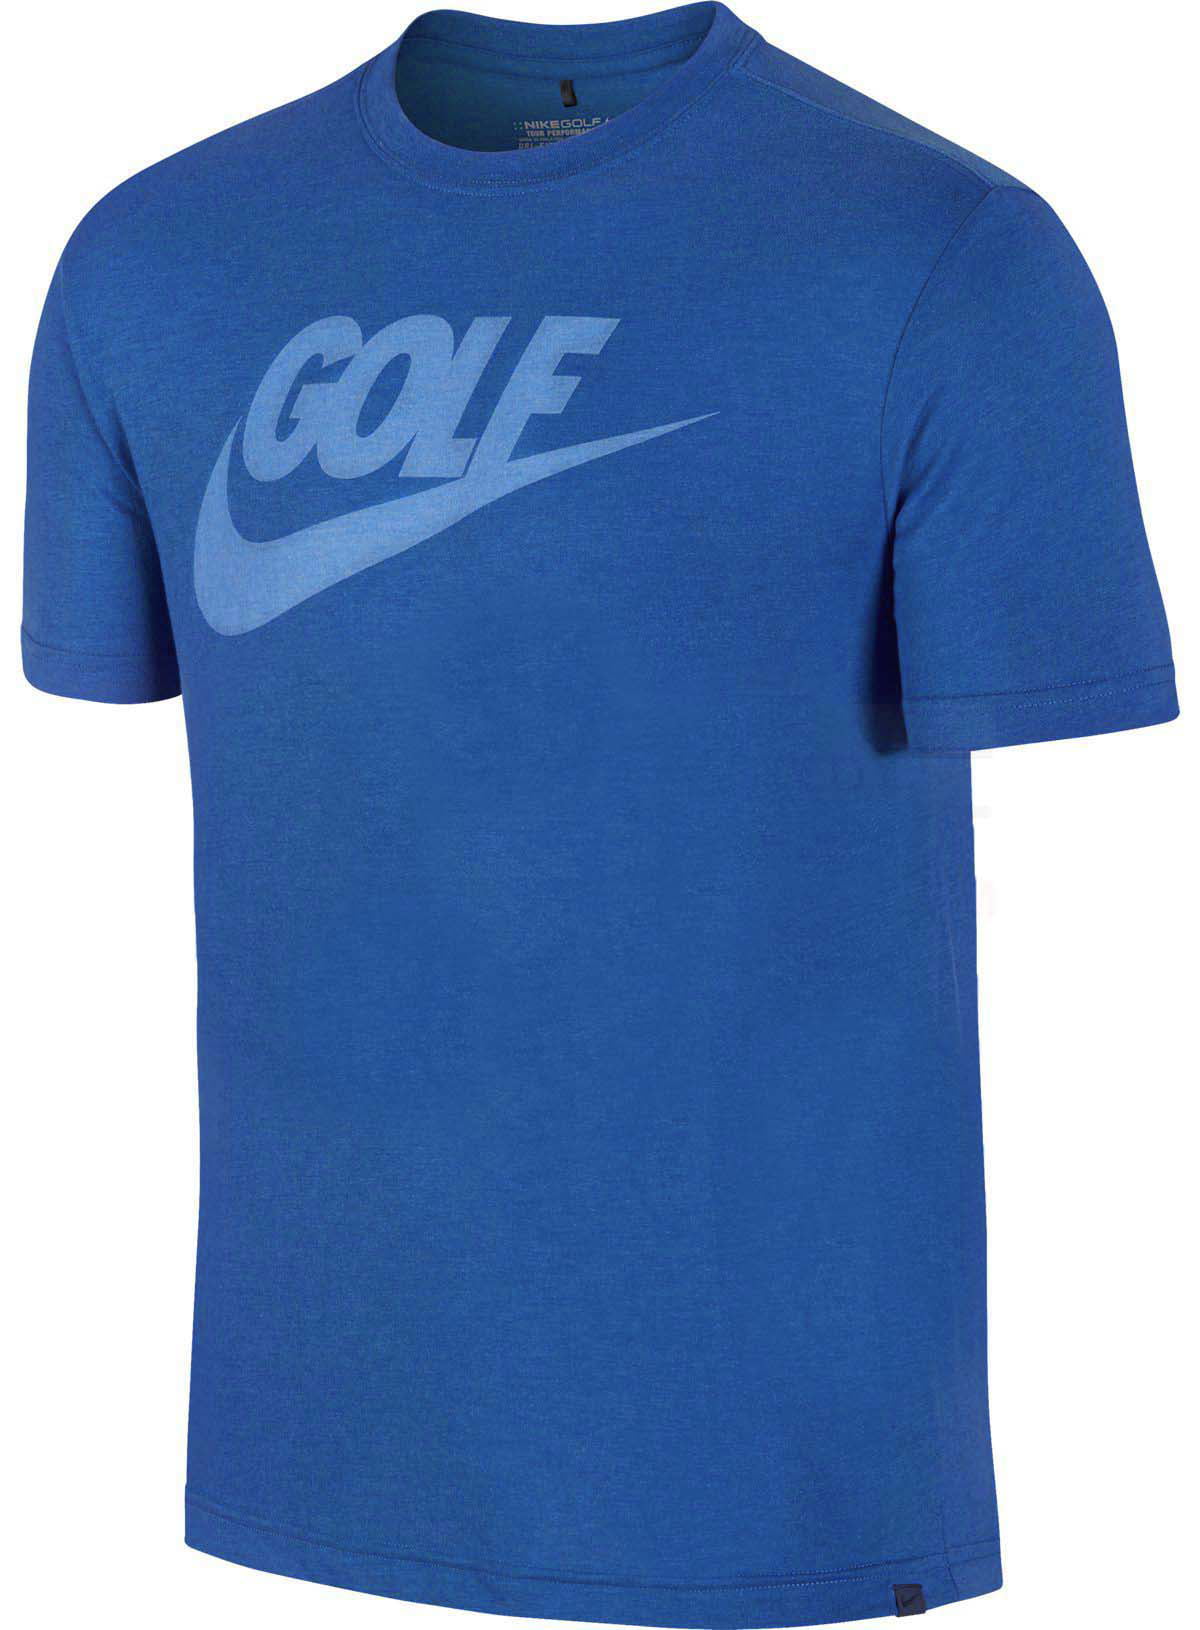 Nike - Nike Men's Dri-Fit Slim-Fit Lock Up Golf T-Shirt - Walmart.com ...